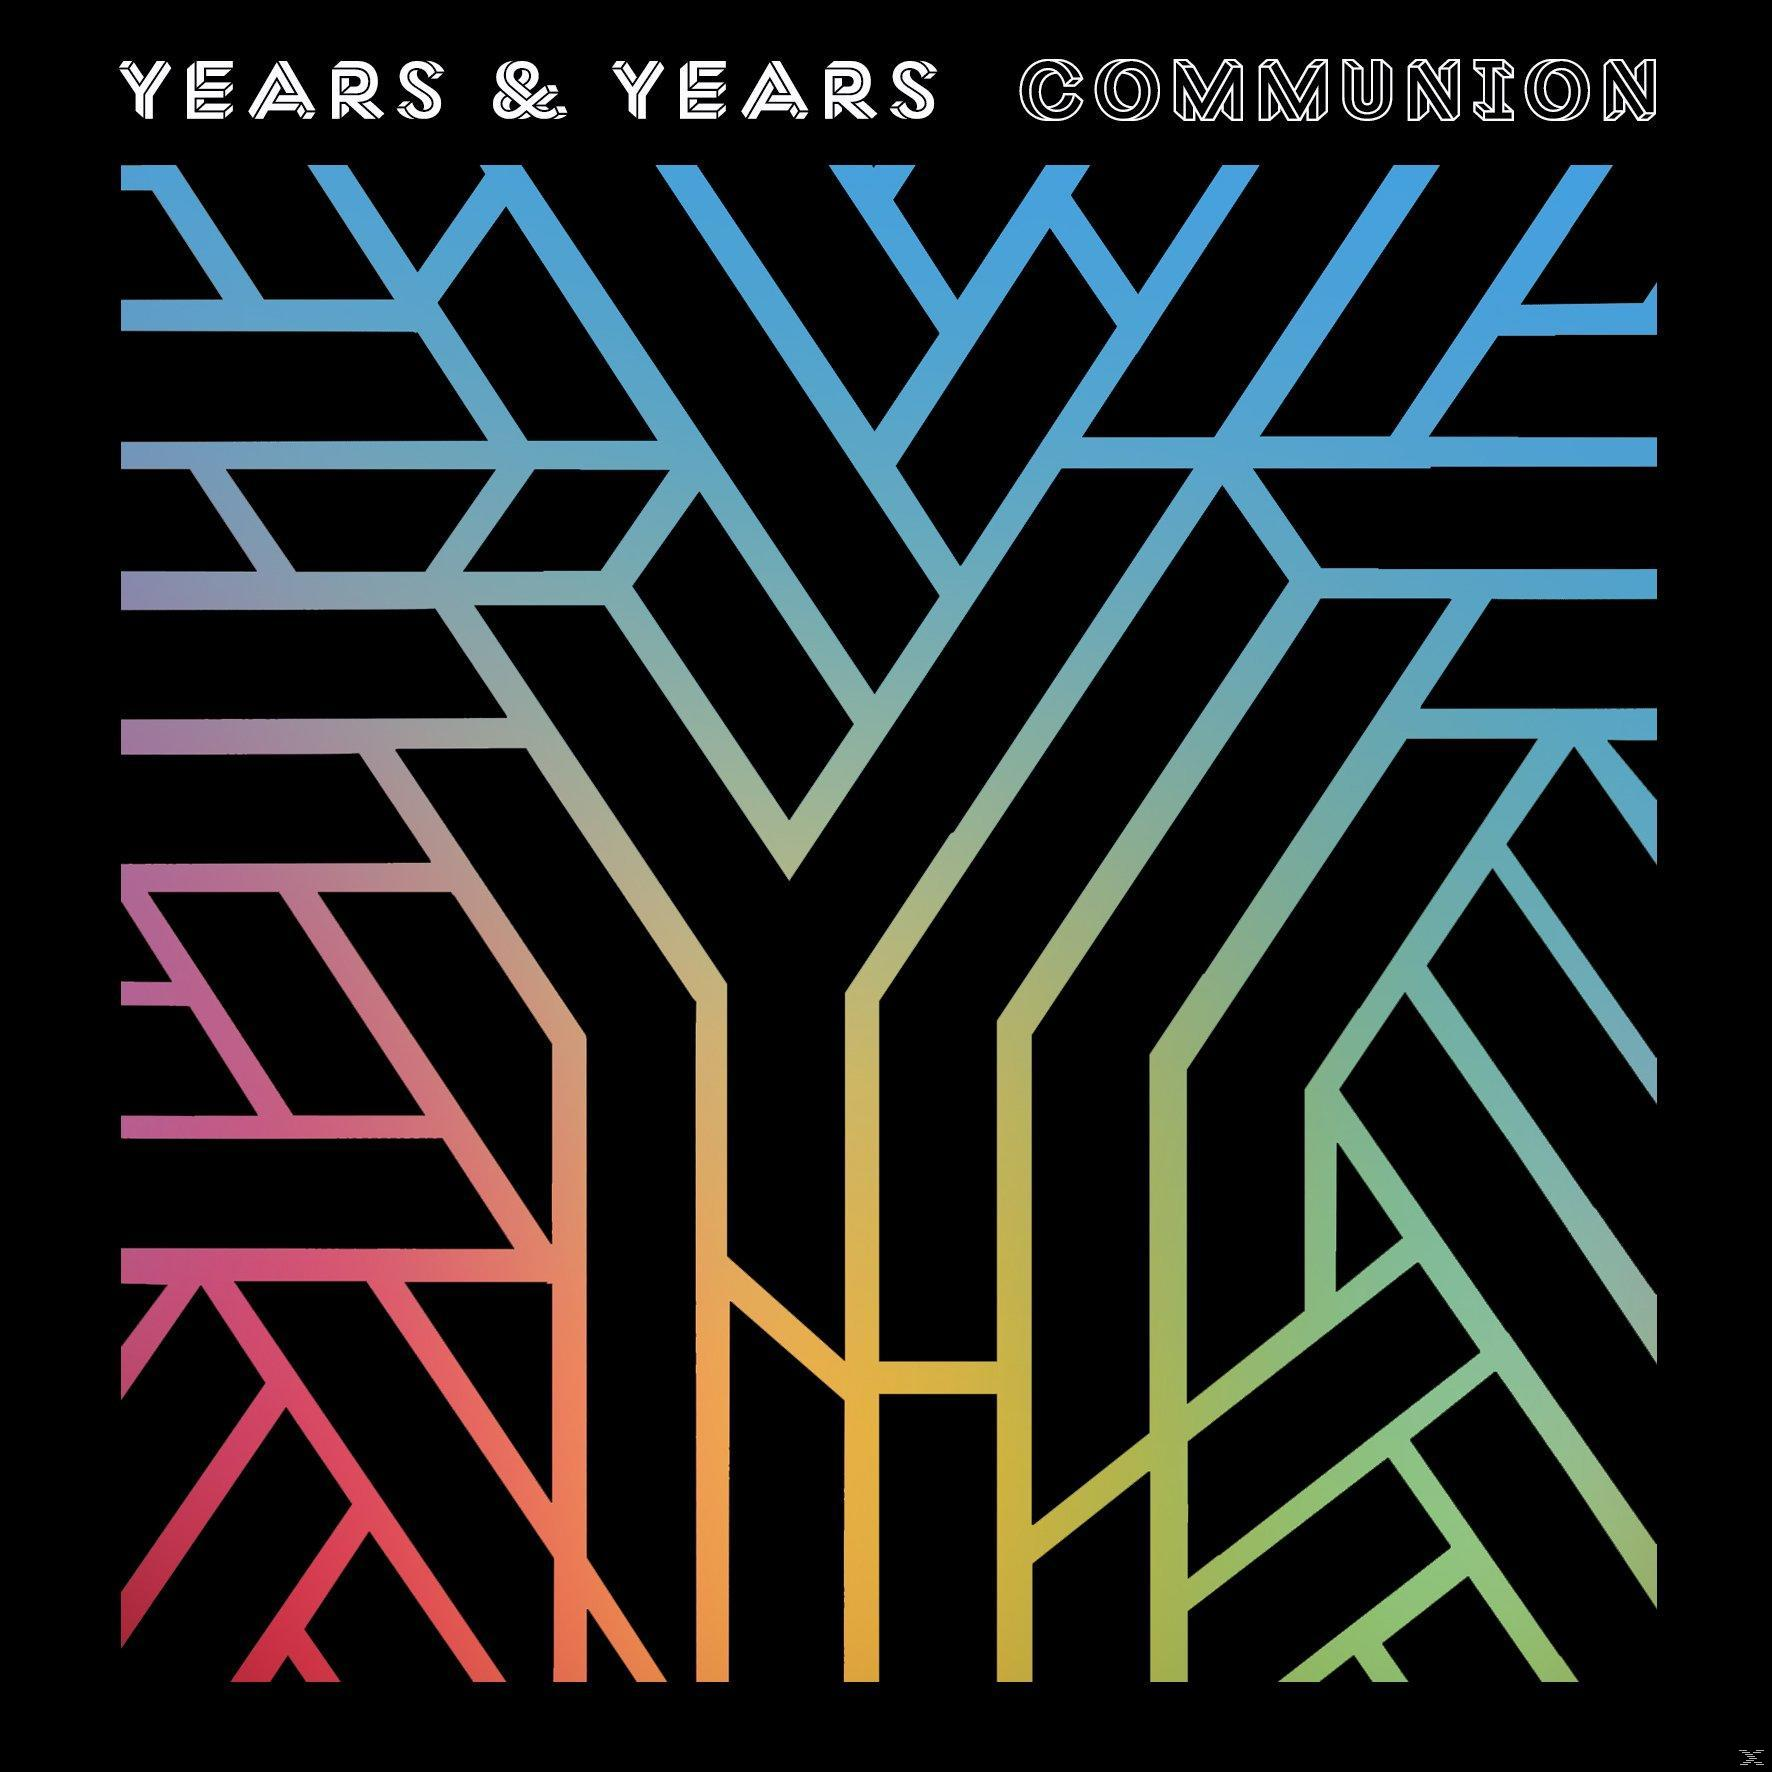 (CD) Communion Years Years - & -